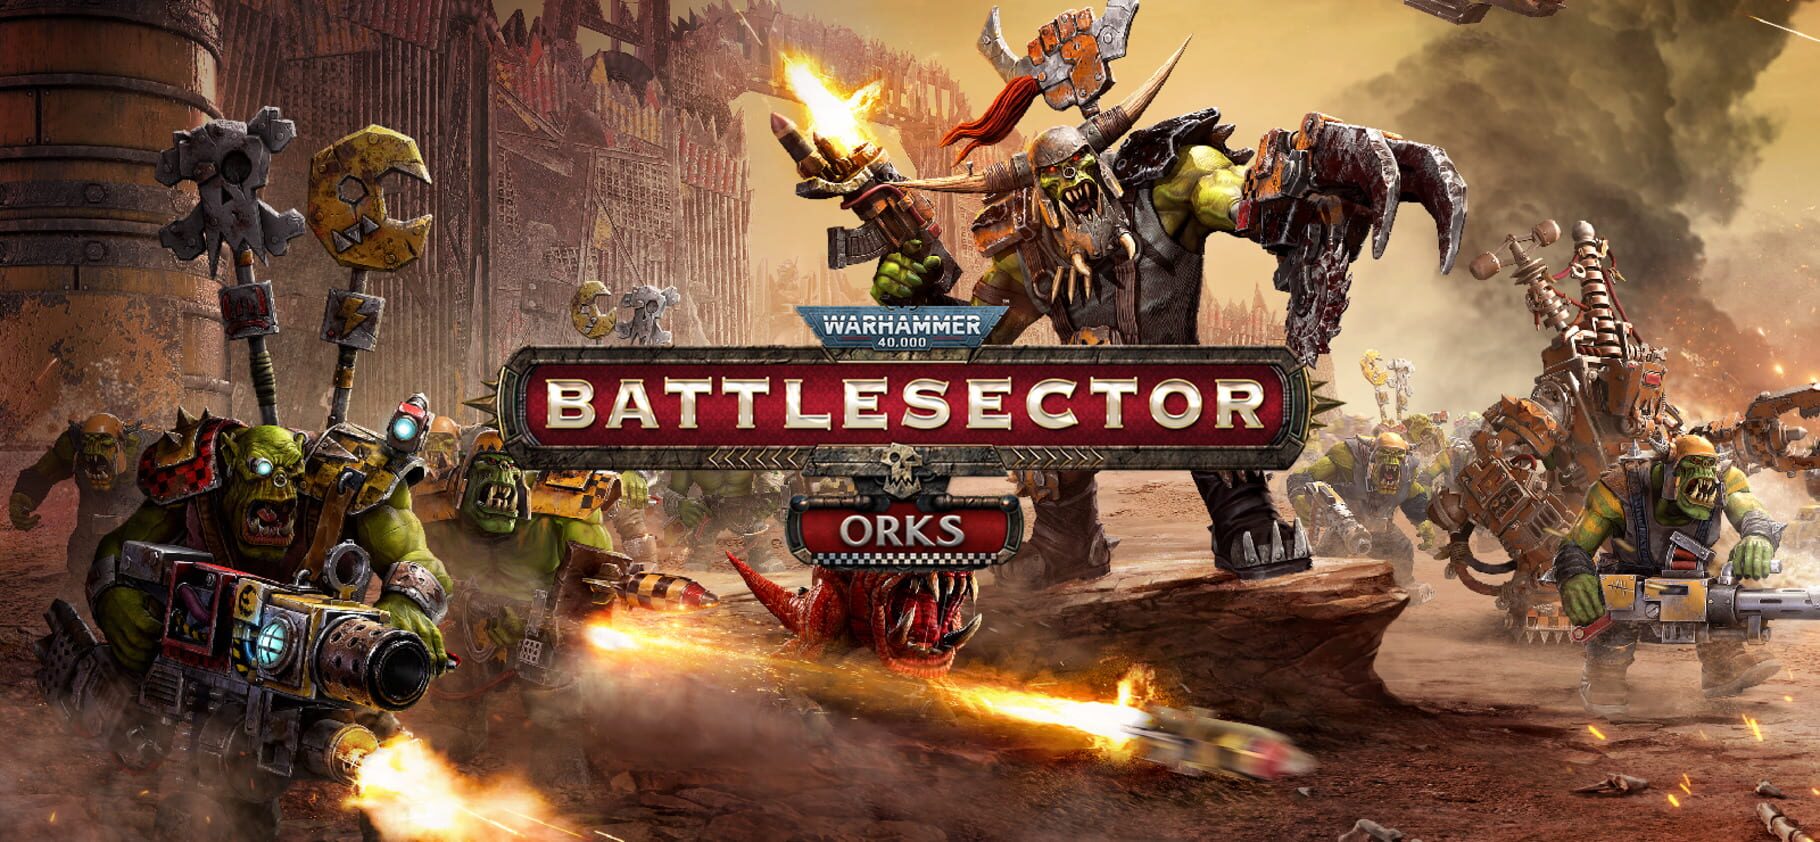 Arte - Warhammer 40,000: Battlesector - Orks